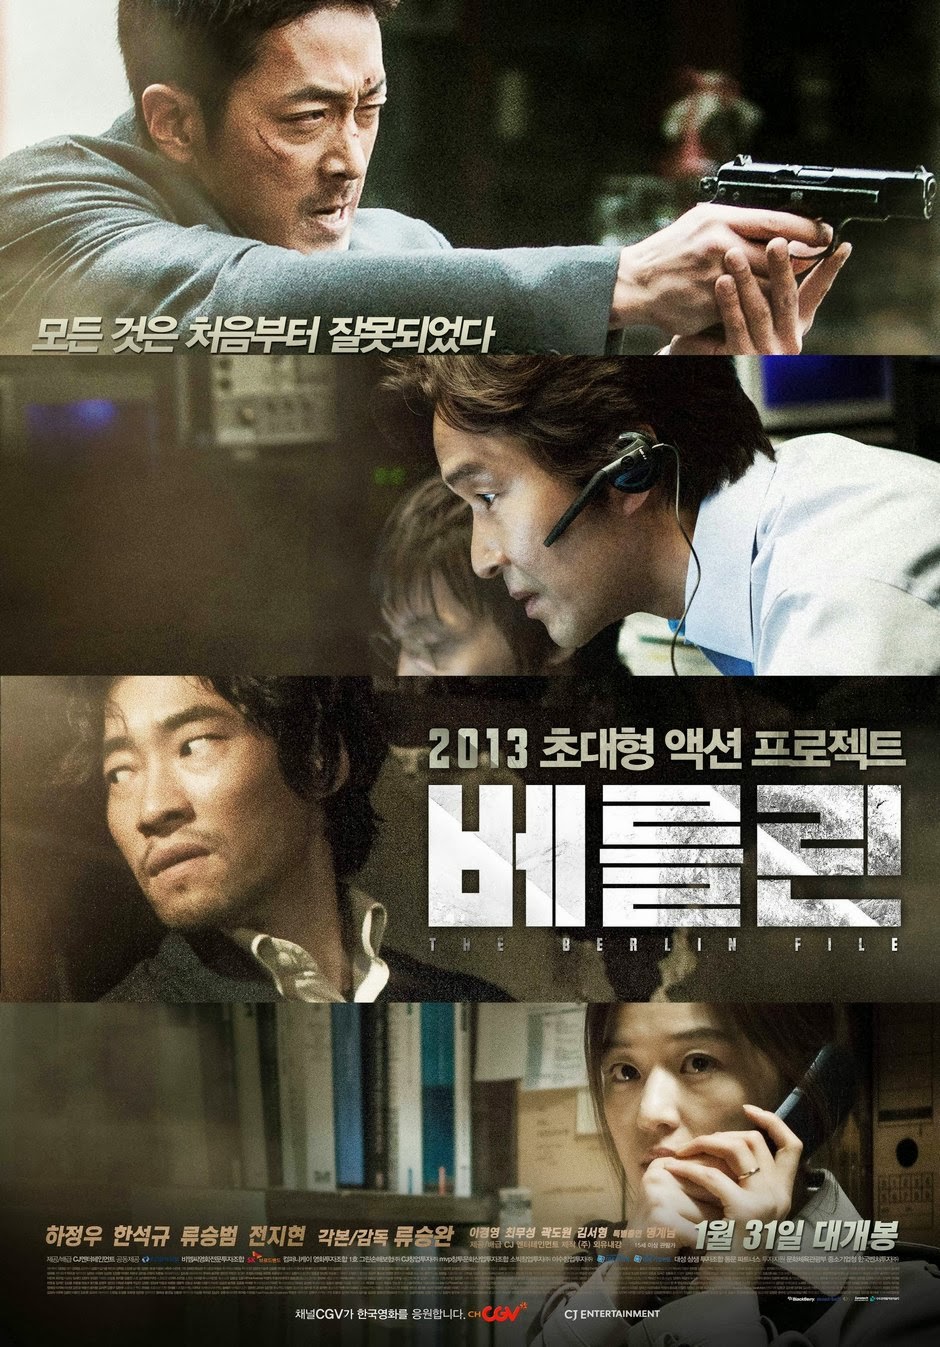 Watch Korean Drama Online